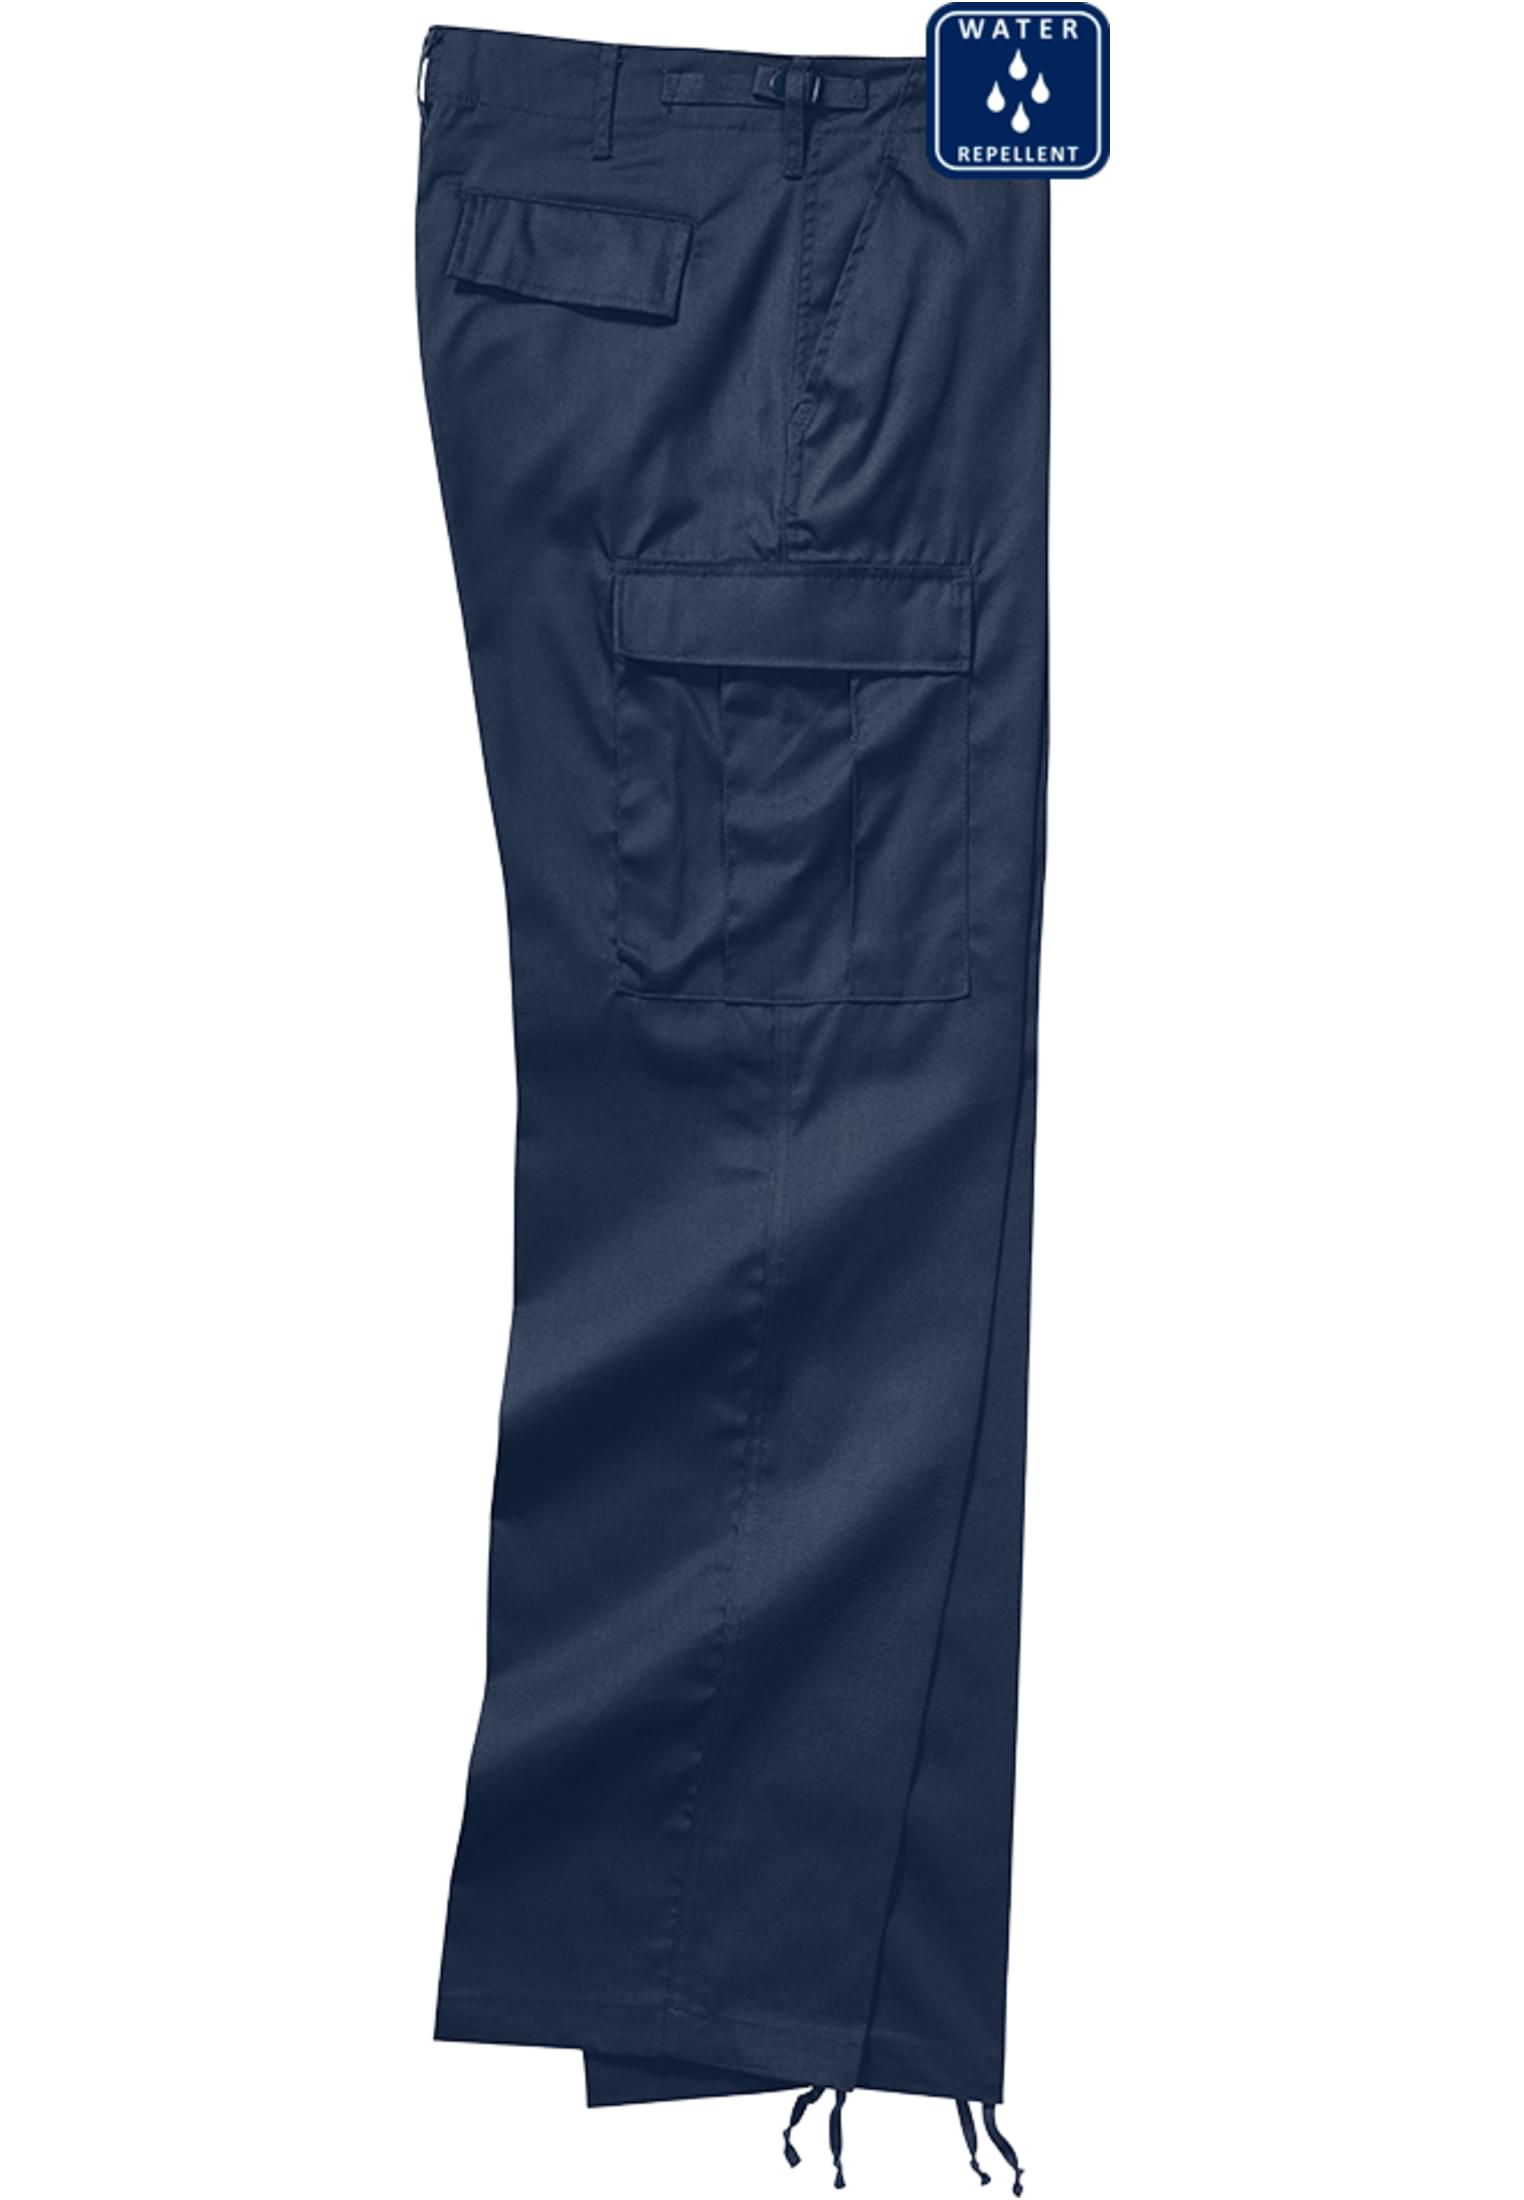 Hosen US Ranger Cargo Pants in Farbe navy